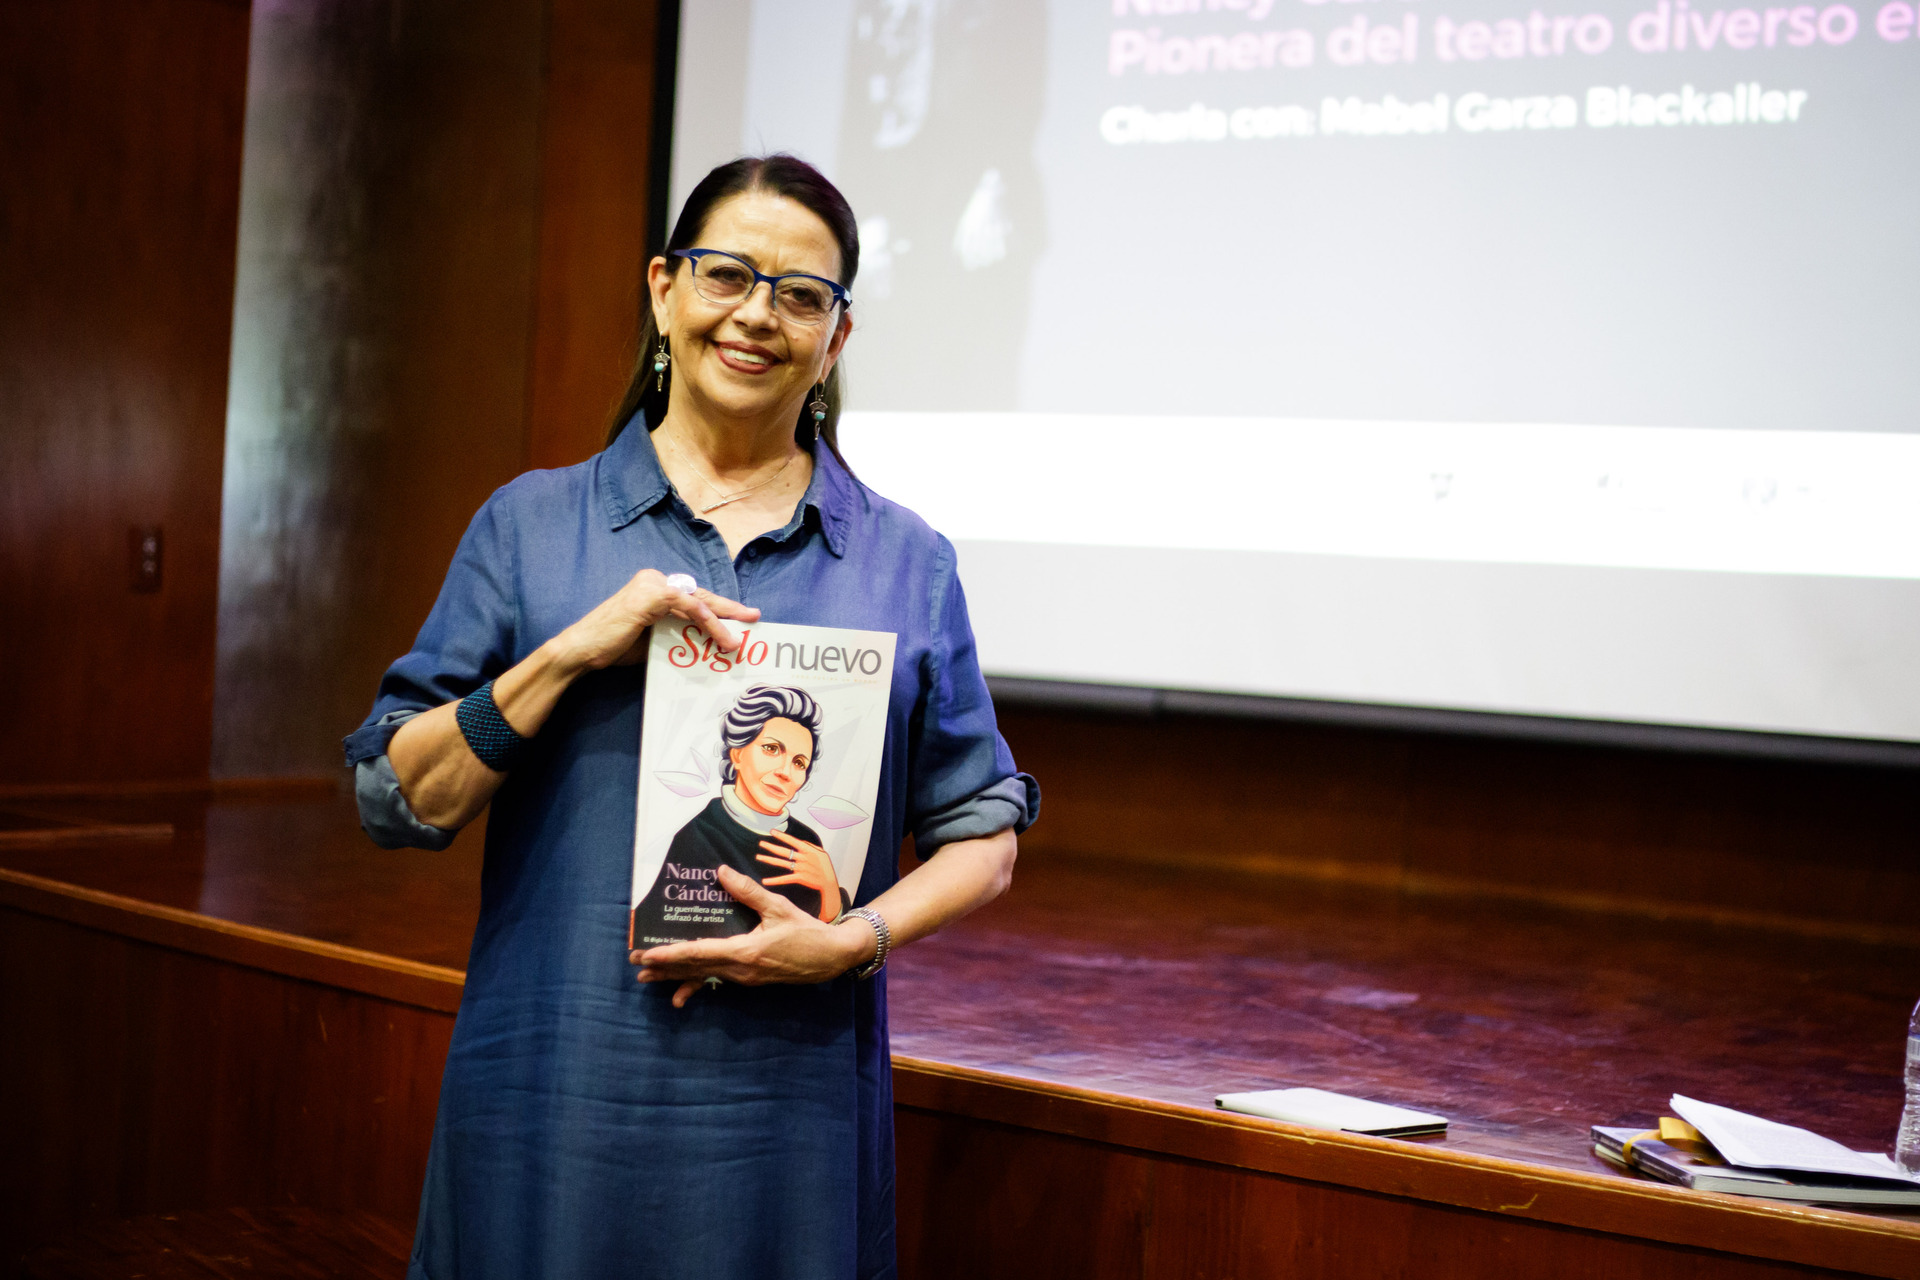 Mabel Garza sostiene un ejemplar de la revista Siglo Nuevo con el reportaje especial sobre la artista escénica coahuilense Nancy Cárdenas (EL SIGLO DE TORREÓN / ENRIQUE CASTRUITA)